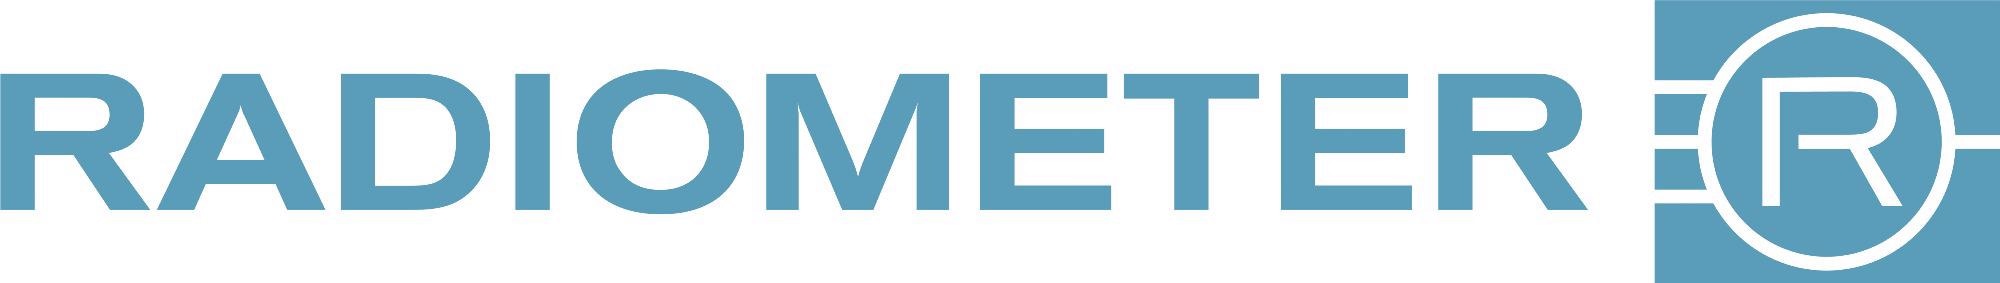 Radiometer Medical logo.